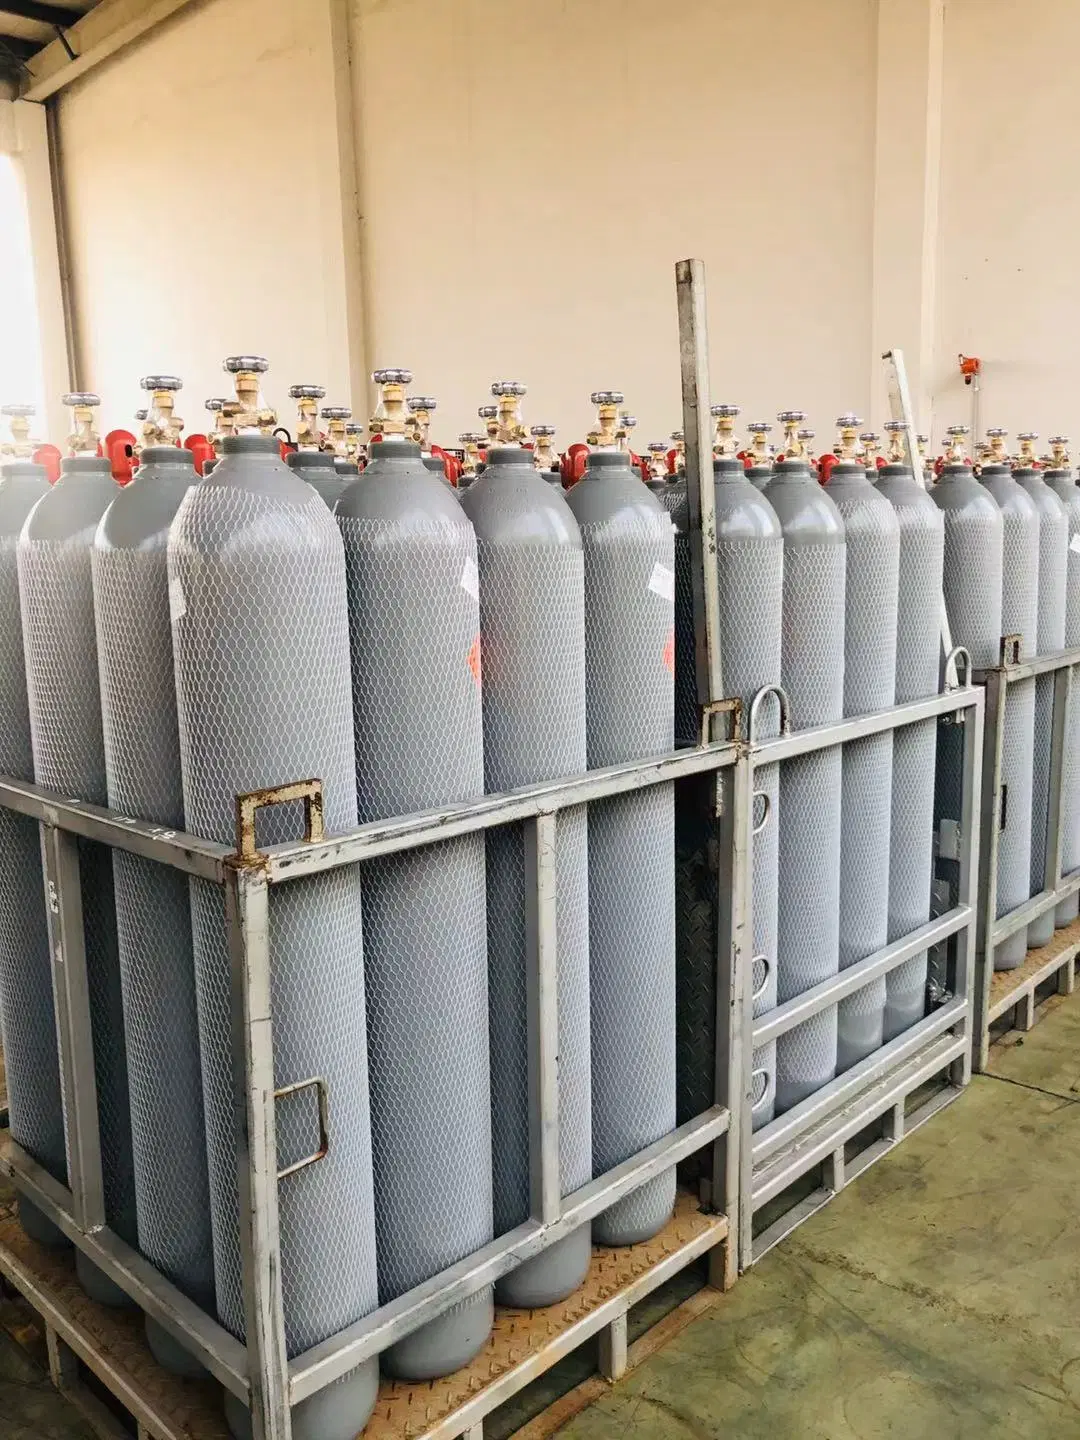 China Gas Factory suministro de alta calidad C2H2 botella de gas acetileno